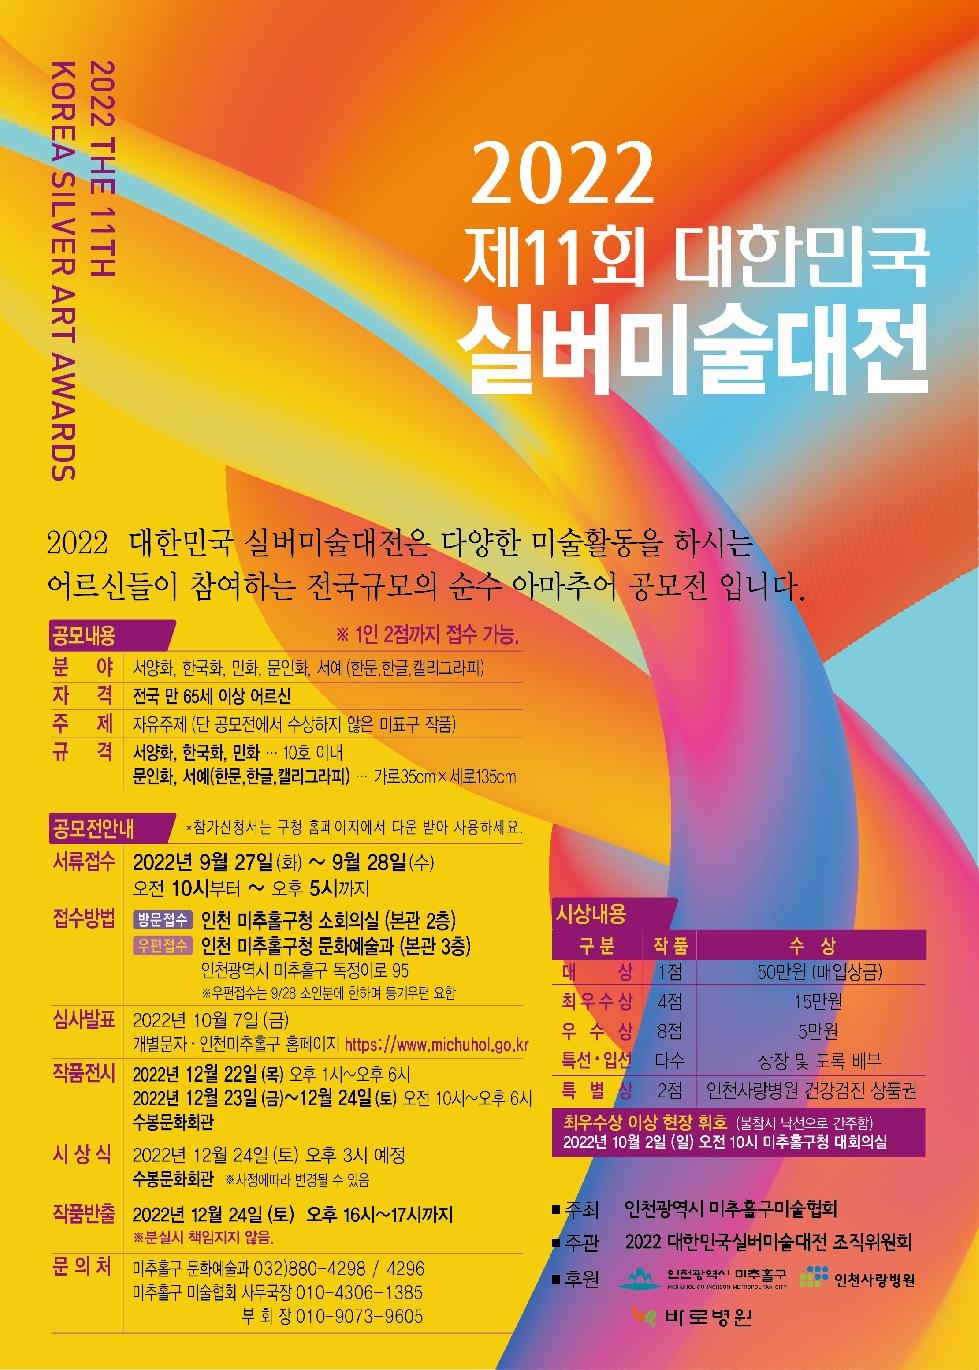 인천 미추홀구 2022년 제11회 대한민국 실버미술대전 개최